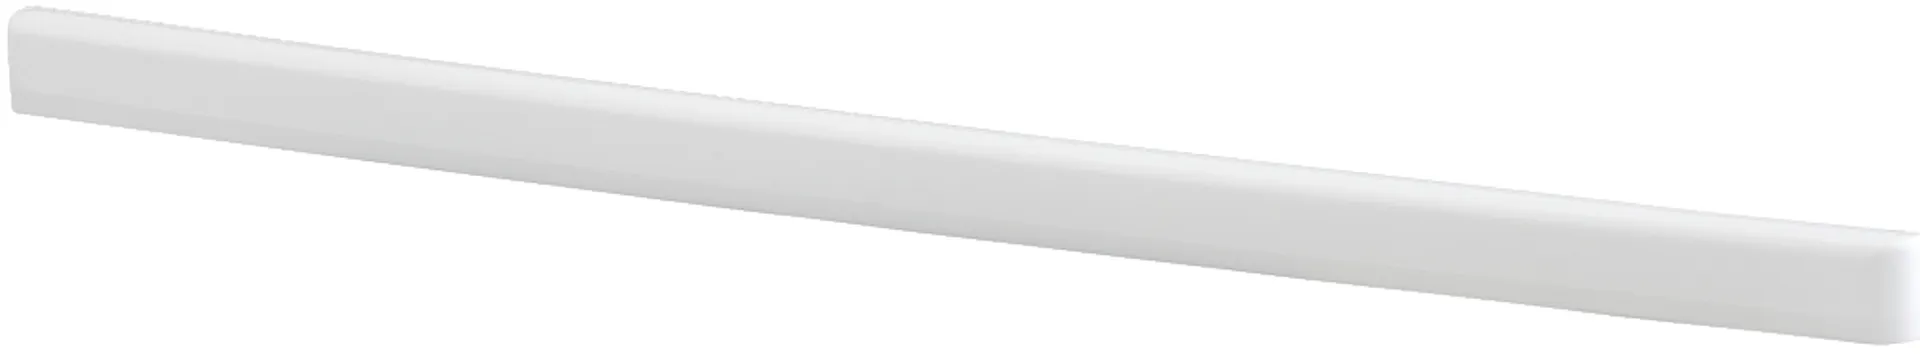 Elfa Classic/Decór kannatinsuoja 30 vasen 601218 320mm valkoinen